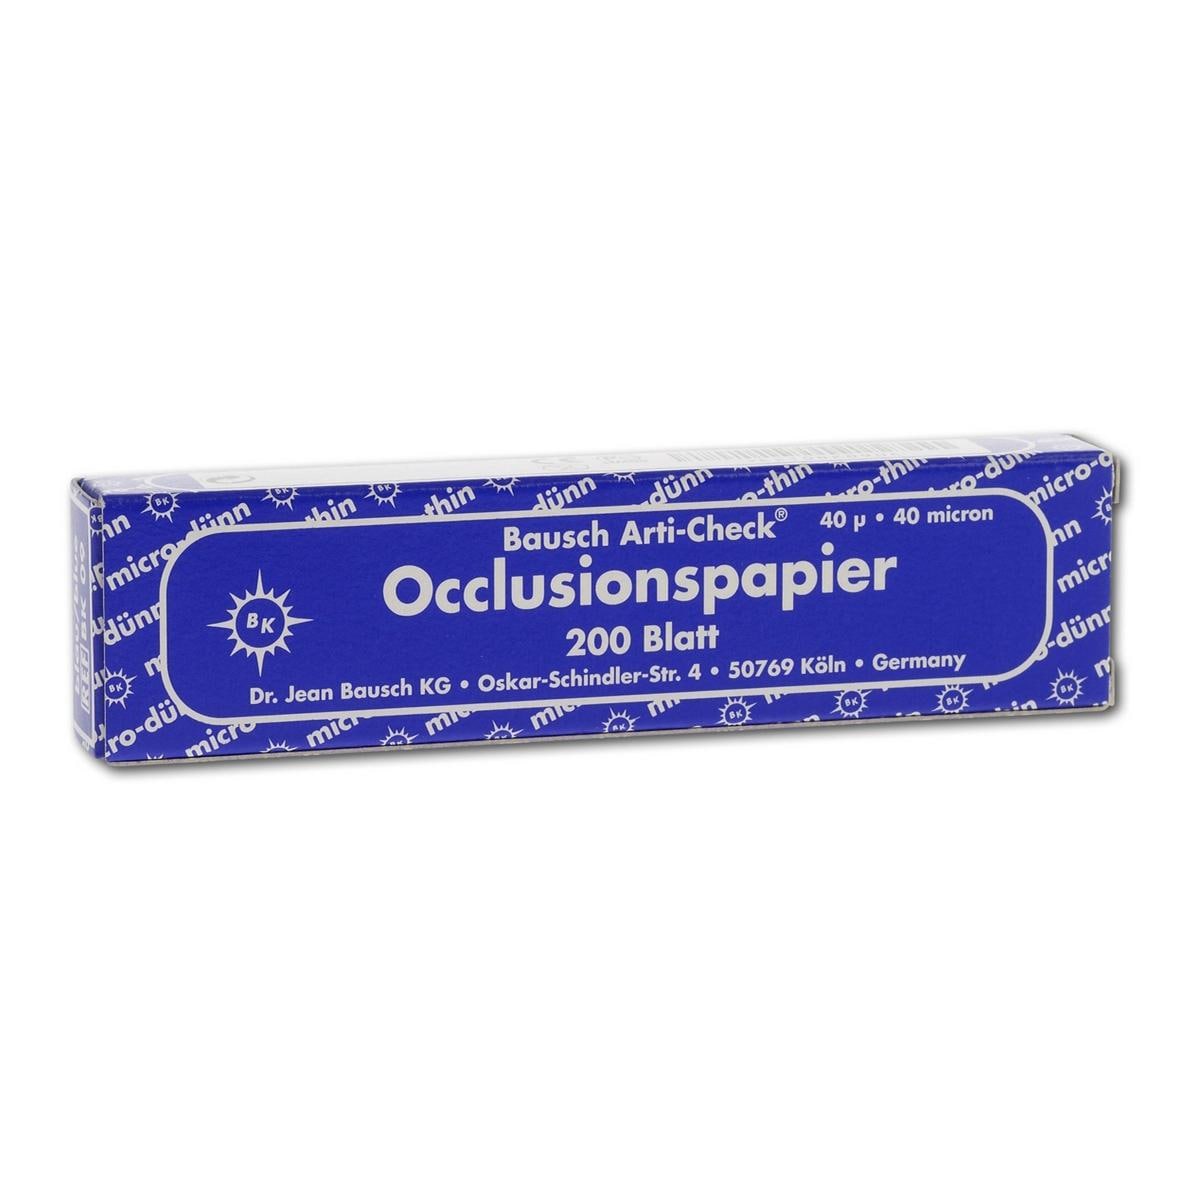 Bausch Occlusionspapier Arti-Check® - BK 09, blau, Heftchenpackung, 200 Blatt